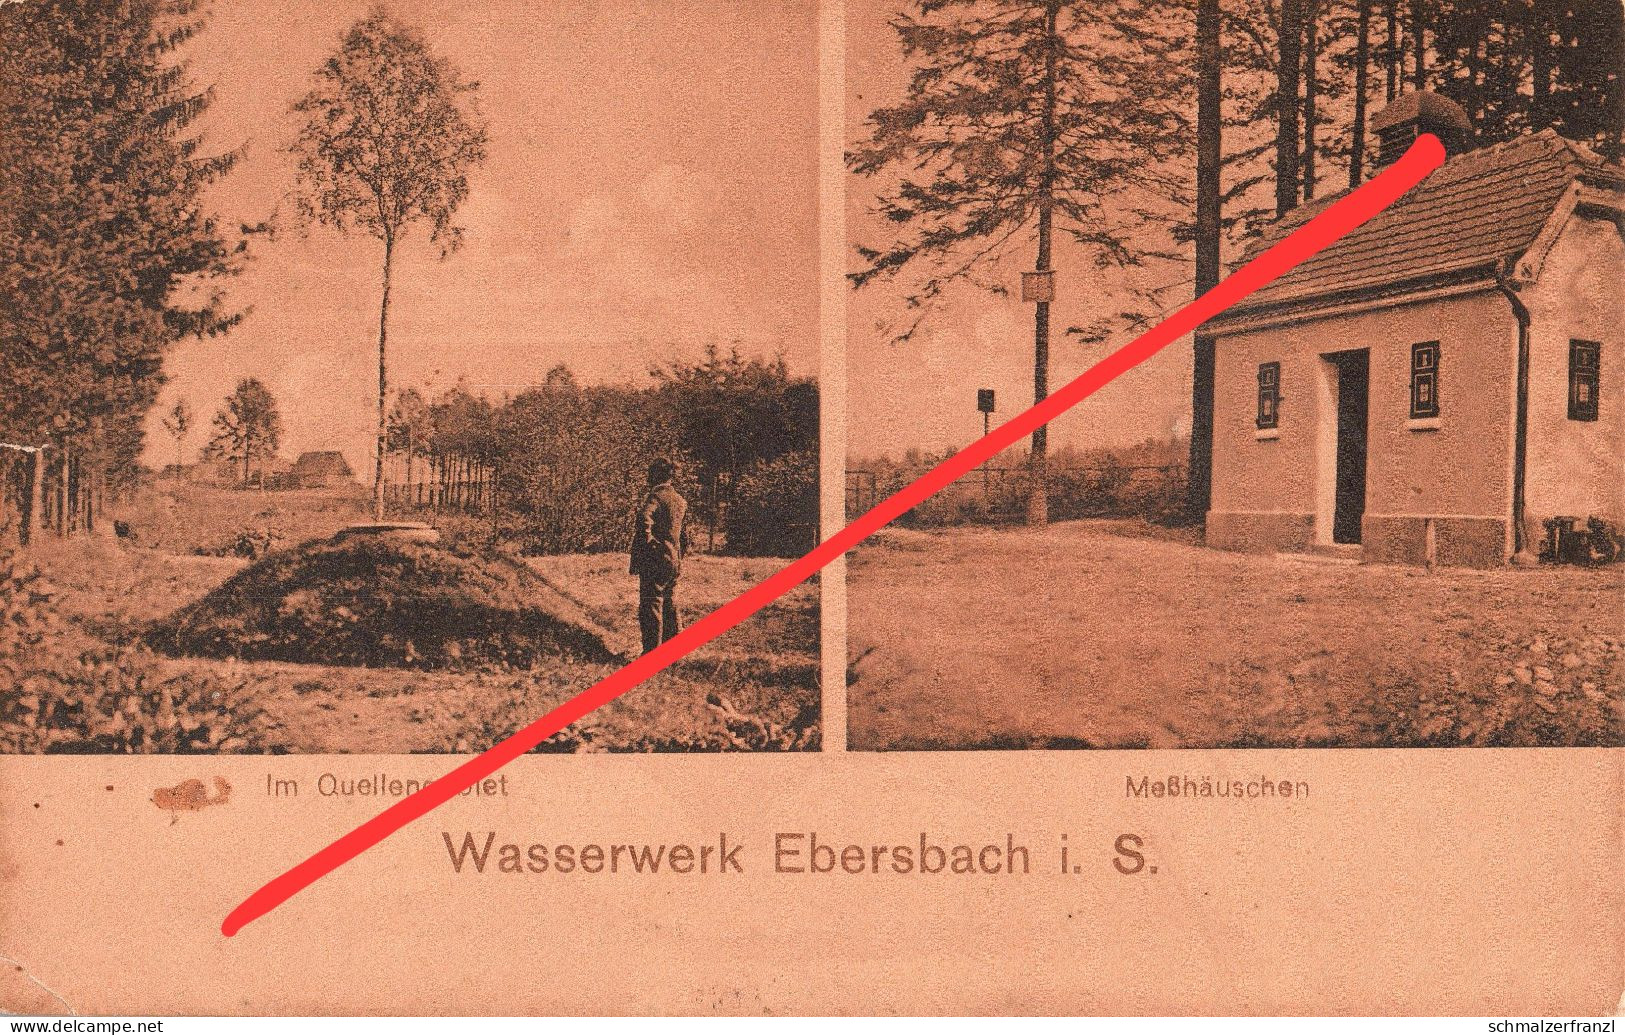 AK Ebersbach Wasserwerk Meßhäuschen Quelle Neugersdorf Neusalza Spremberg Seifhennersdorf Eibau Georgswalde Fugau Zittau - Ebersbach (Loebau/Zittau)